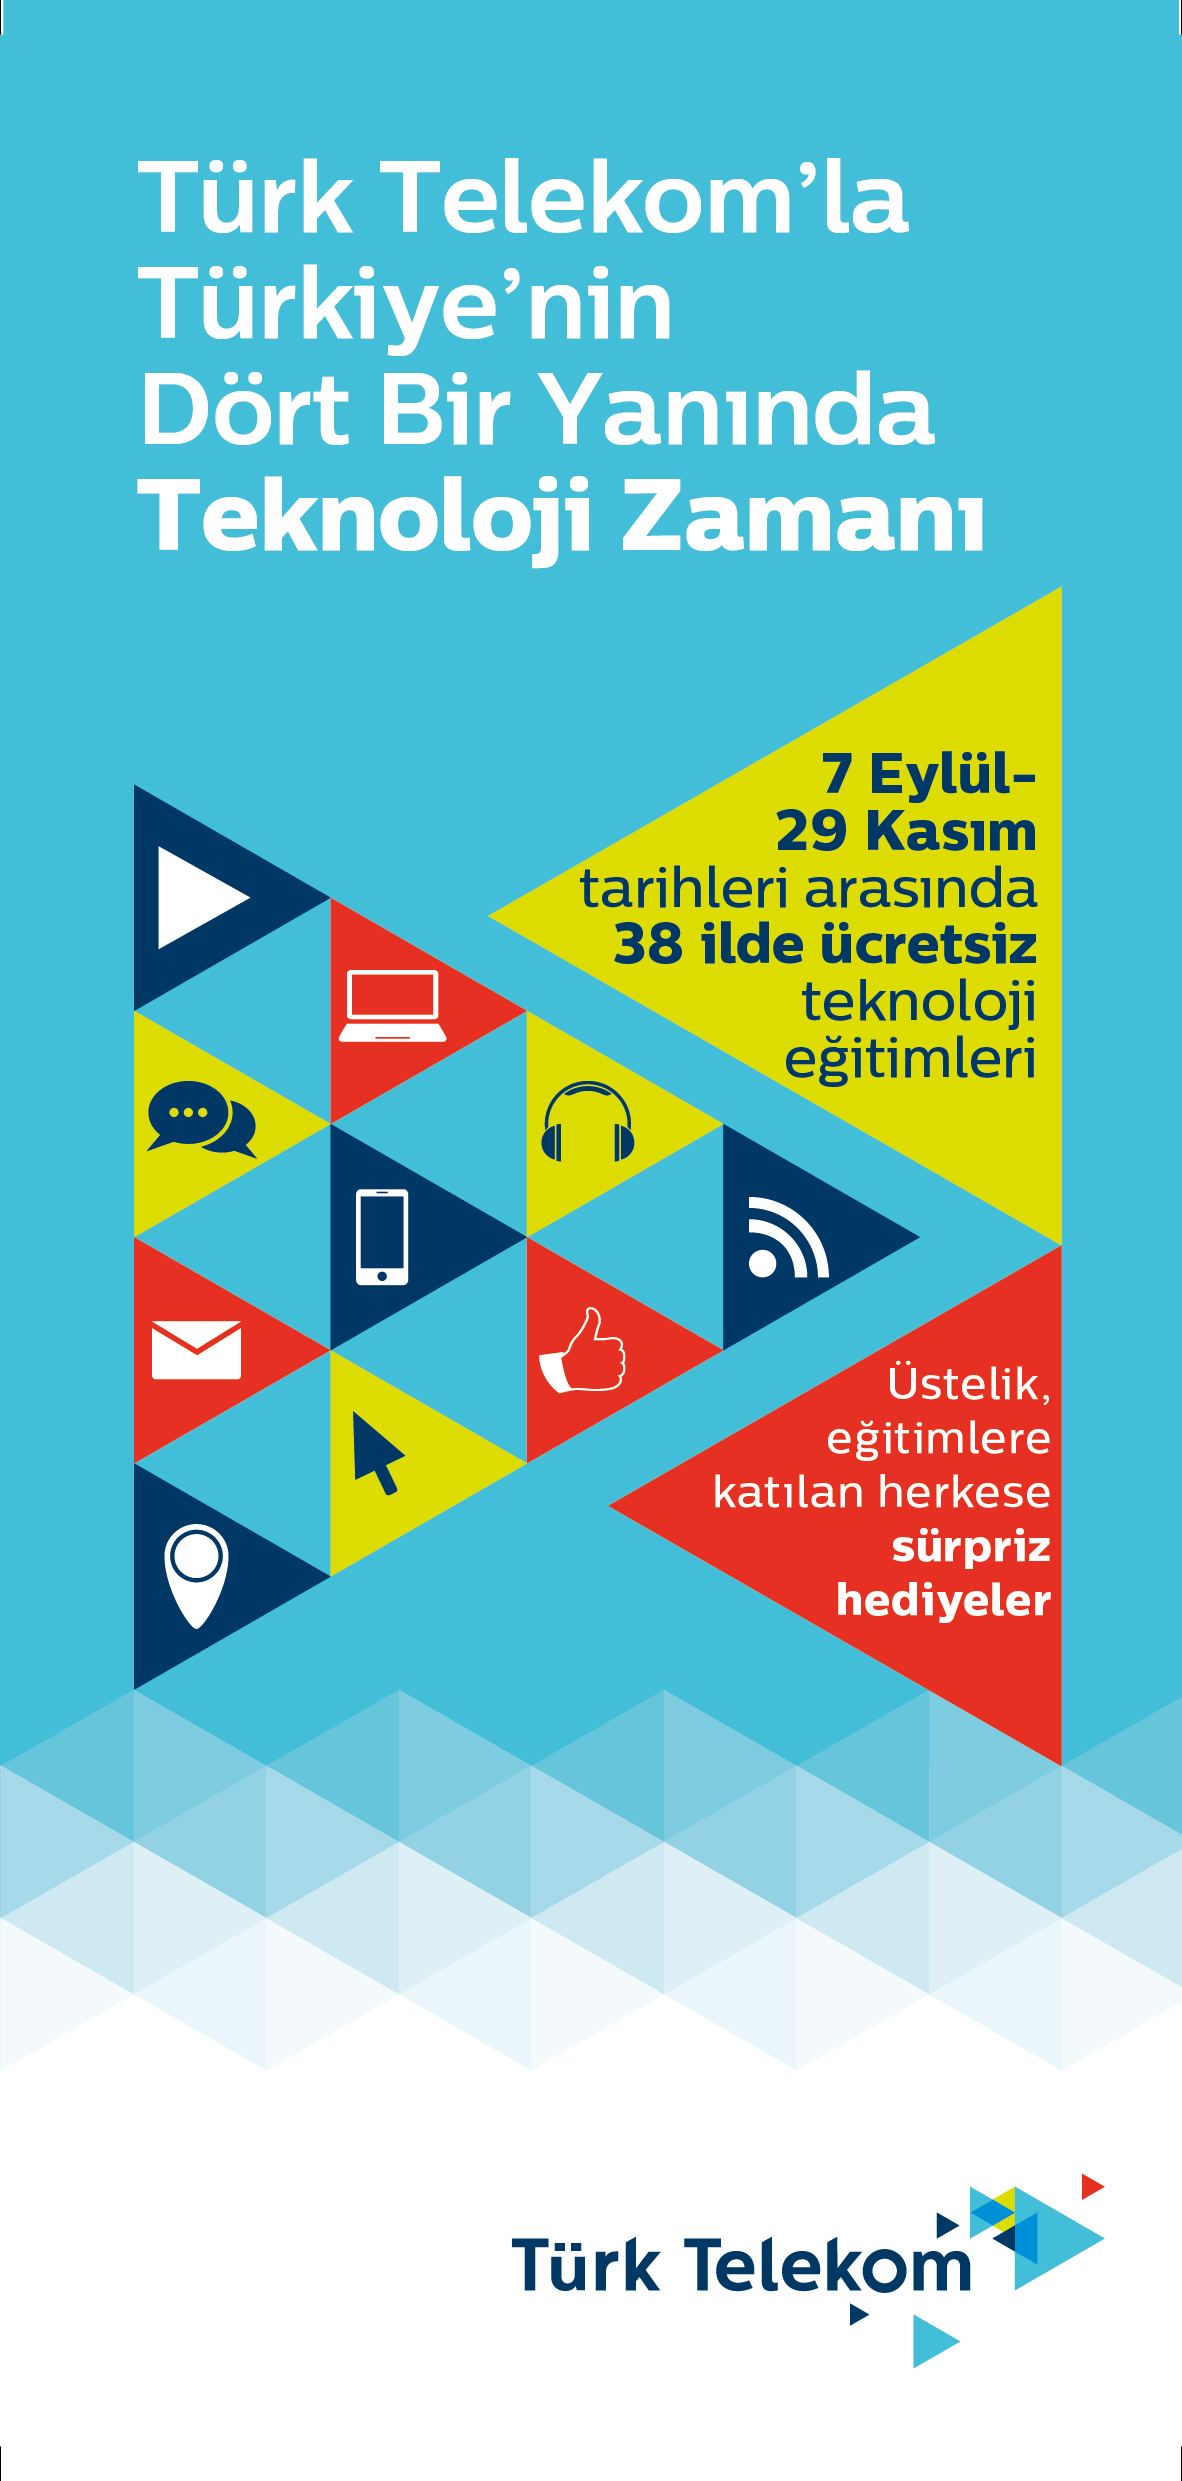 Türk Telekom, teknoloji seferberliği için İstanbul’da